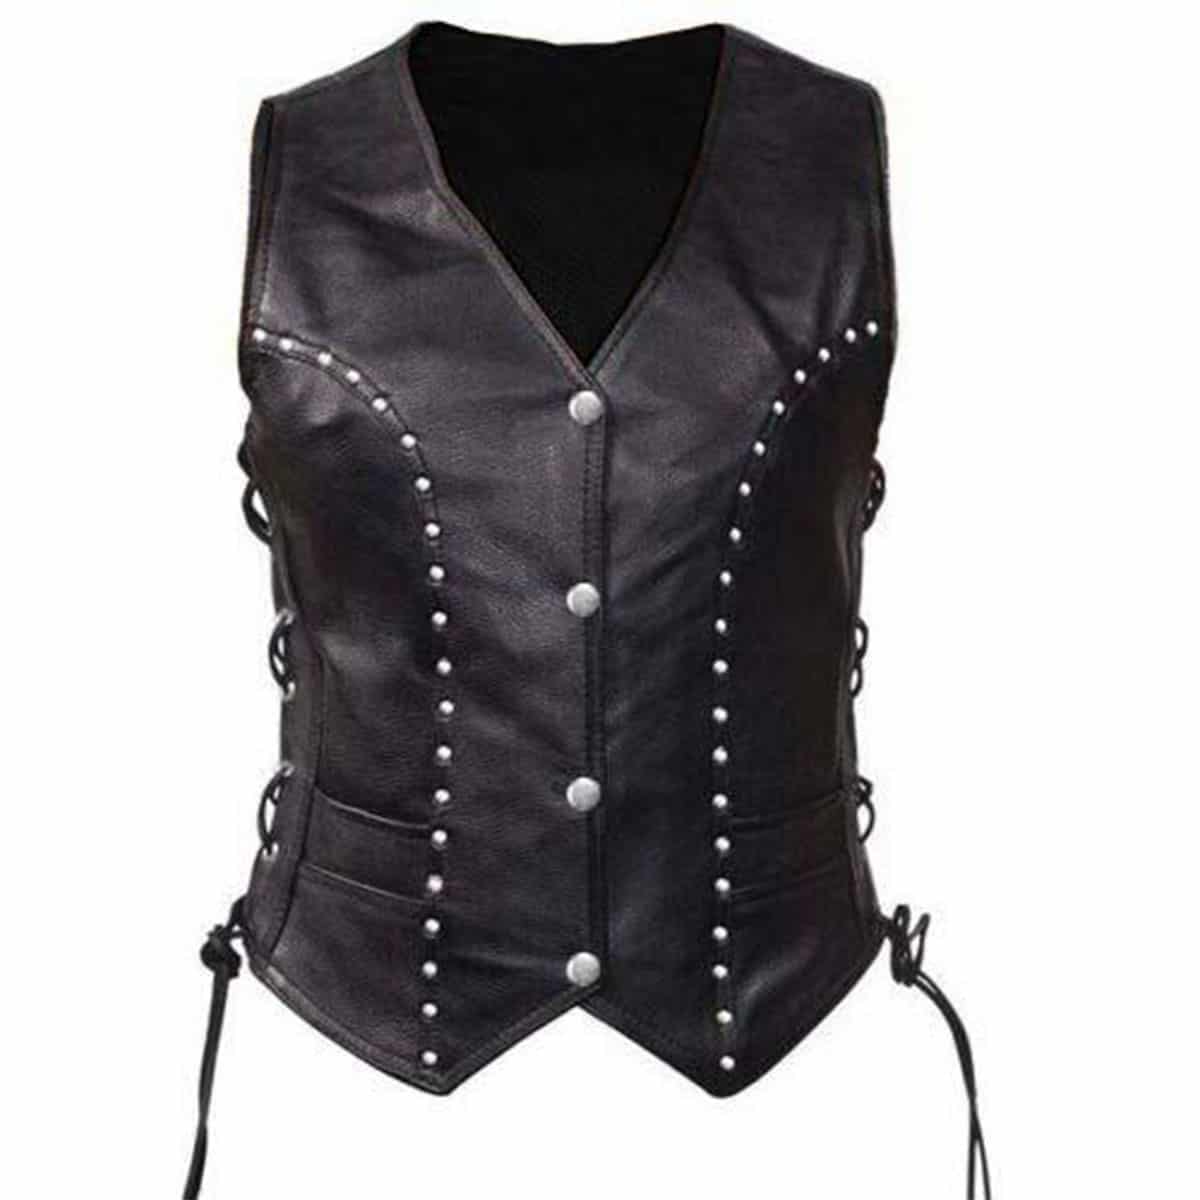 Women Bikers Waistcoat Black Leather Vest - W10-BLK